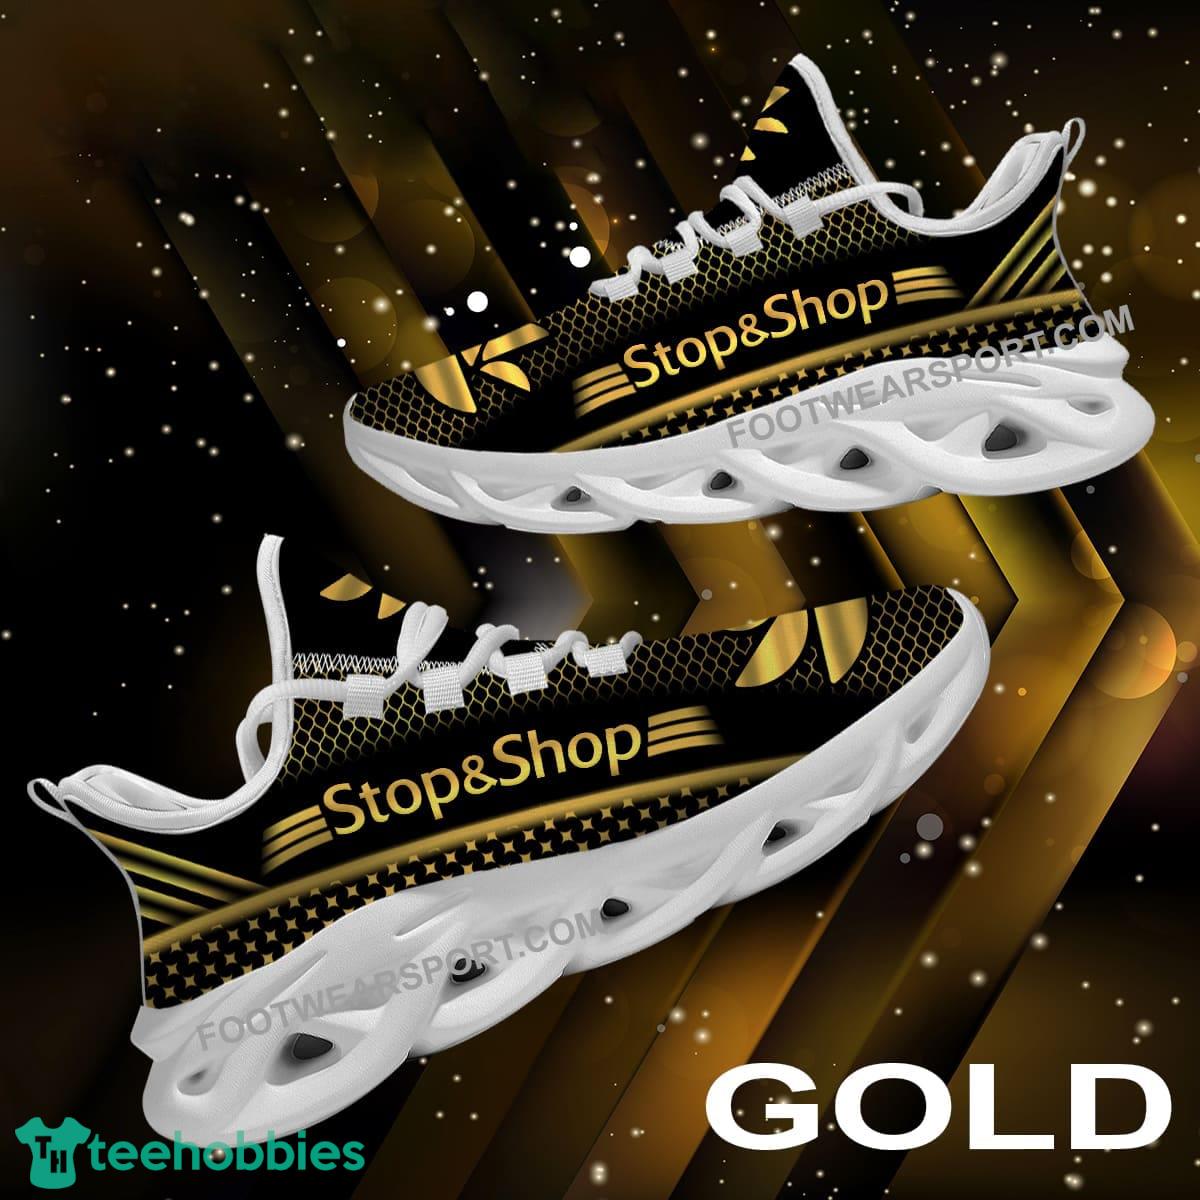 Stop & Shop Max Soul Shoes Gold Sport Sneaker Innovative For Fans Gift - Stop & Shop Max Soul Shoes Gold Sport Sneaker Innovative For Fans Gift